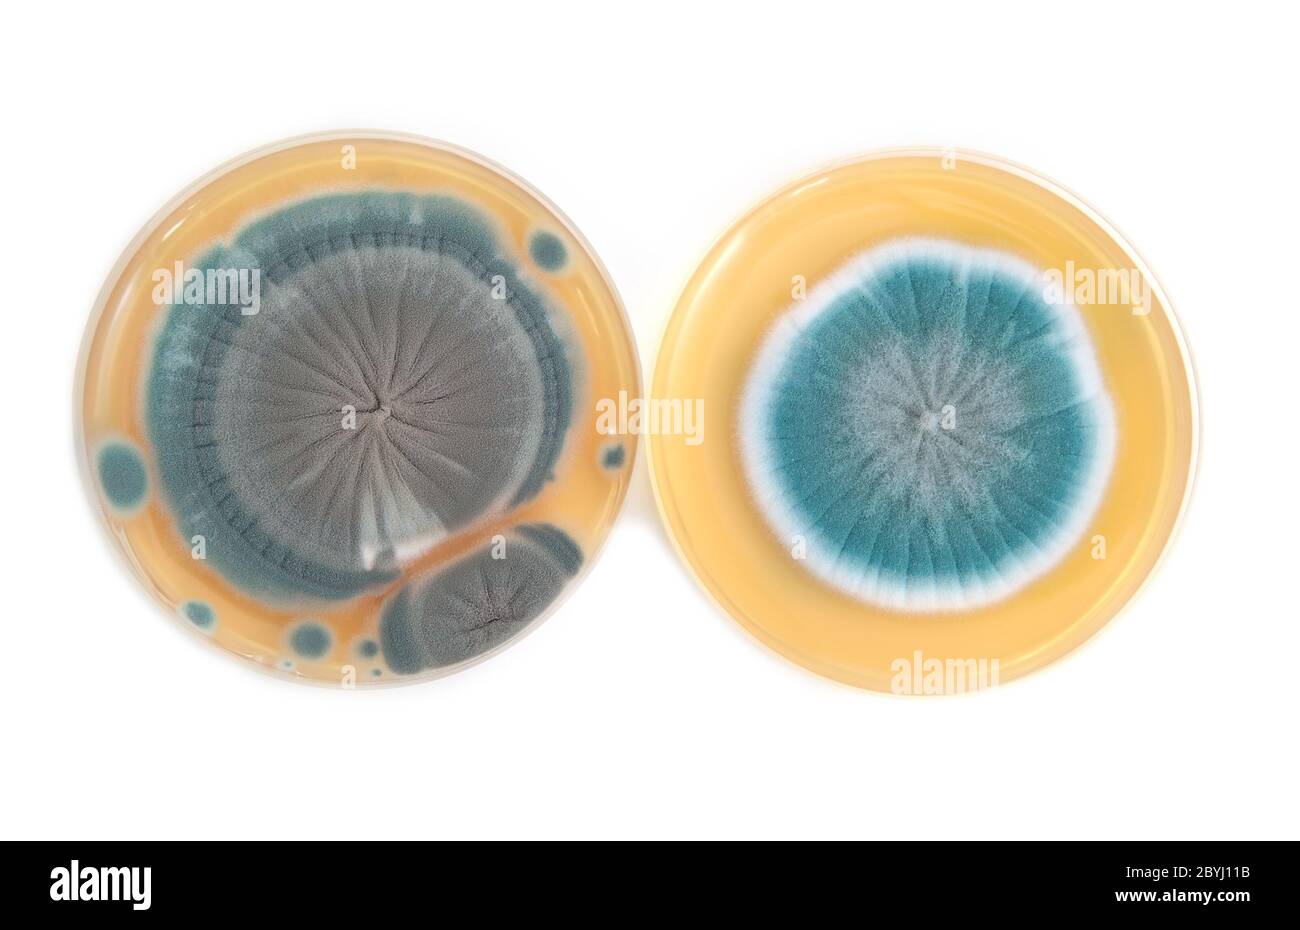 Penicillium fungi on agar plate Stock Photo